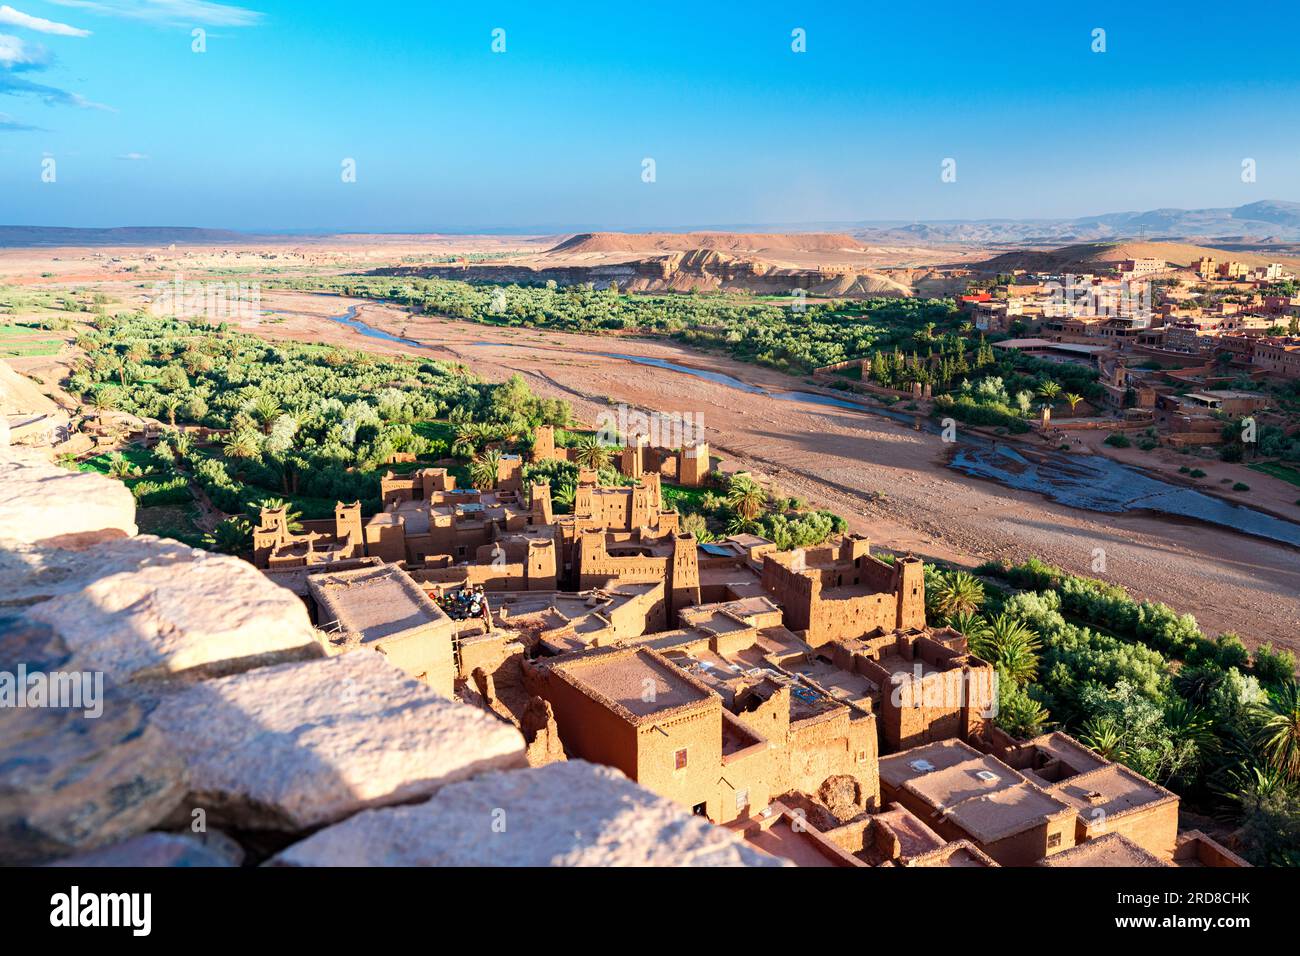 Vue à angle élevé d'ait Ben Haddou, site du patrimoine mondial de l'UNESCO, dans le paysage désertique au pied des montagnes de l'Atlas, province de Ouarzazate, Maroc Banque D'Images